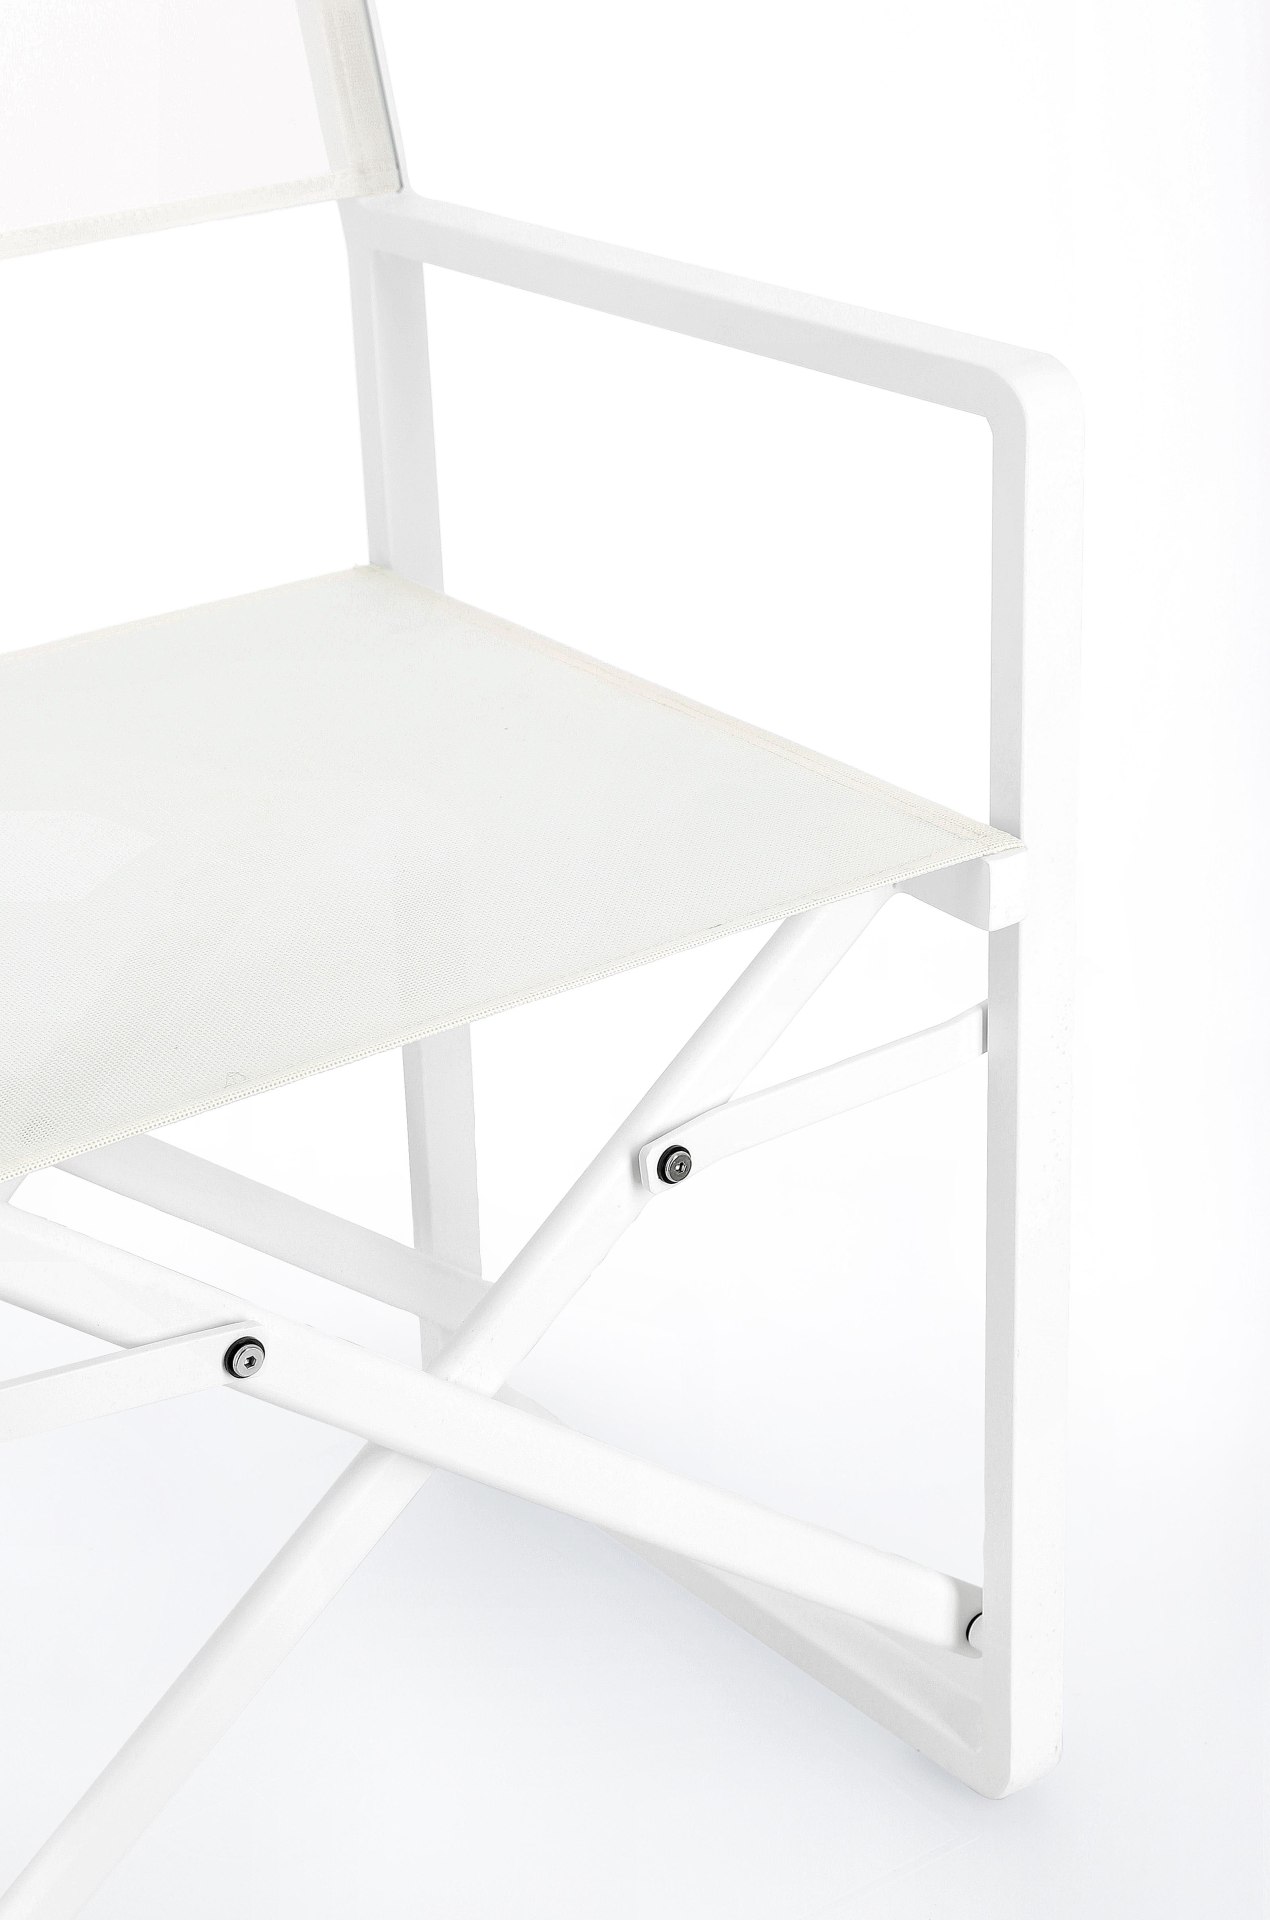 Der Gartenstuhl Konnor überzeugt mit seinem modernen Design. Gefertigt wurde er aus Textilene, welche einen weißen Farbton besitzt. Das Gestell ist aus Aluminium und hat auch eine weiße Farbe. Der Stuhl verfügt über eine Sitzhöhe von 46 cm und ist für den